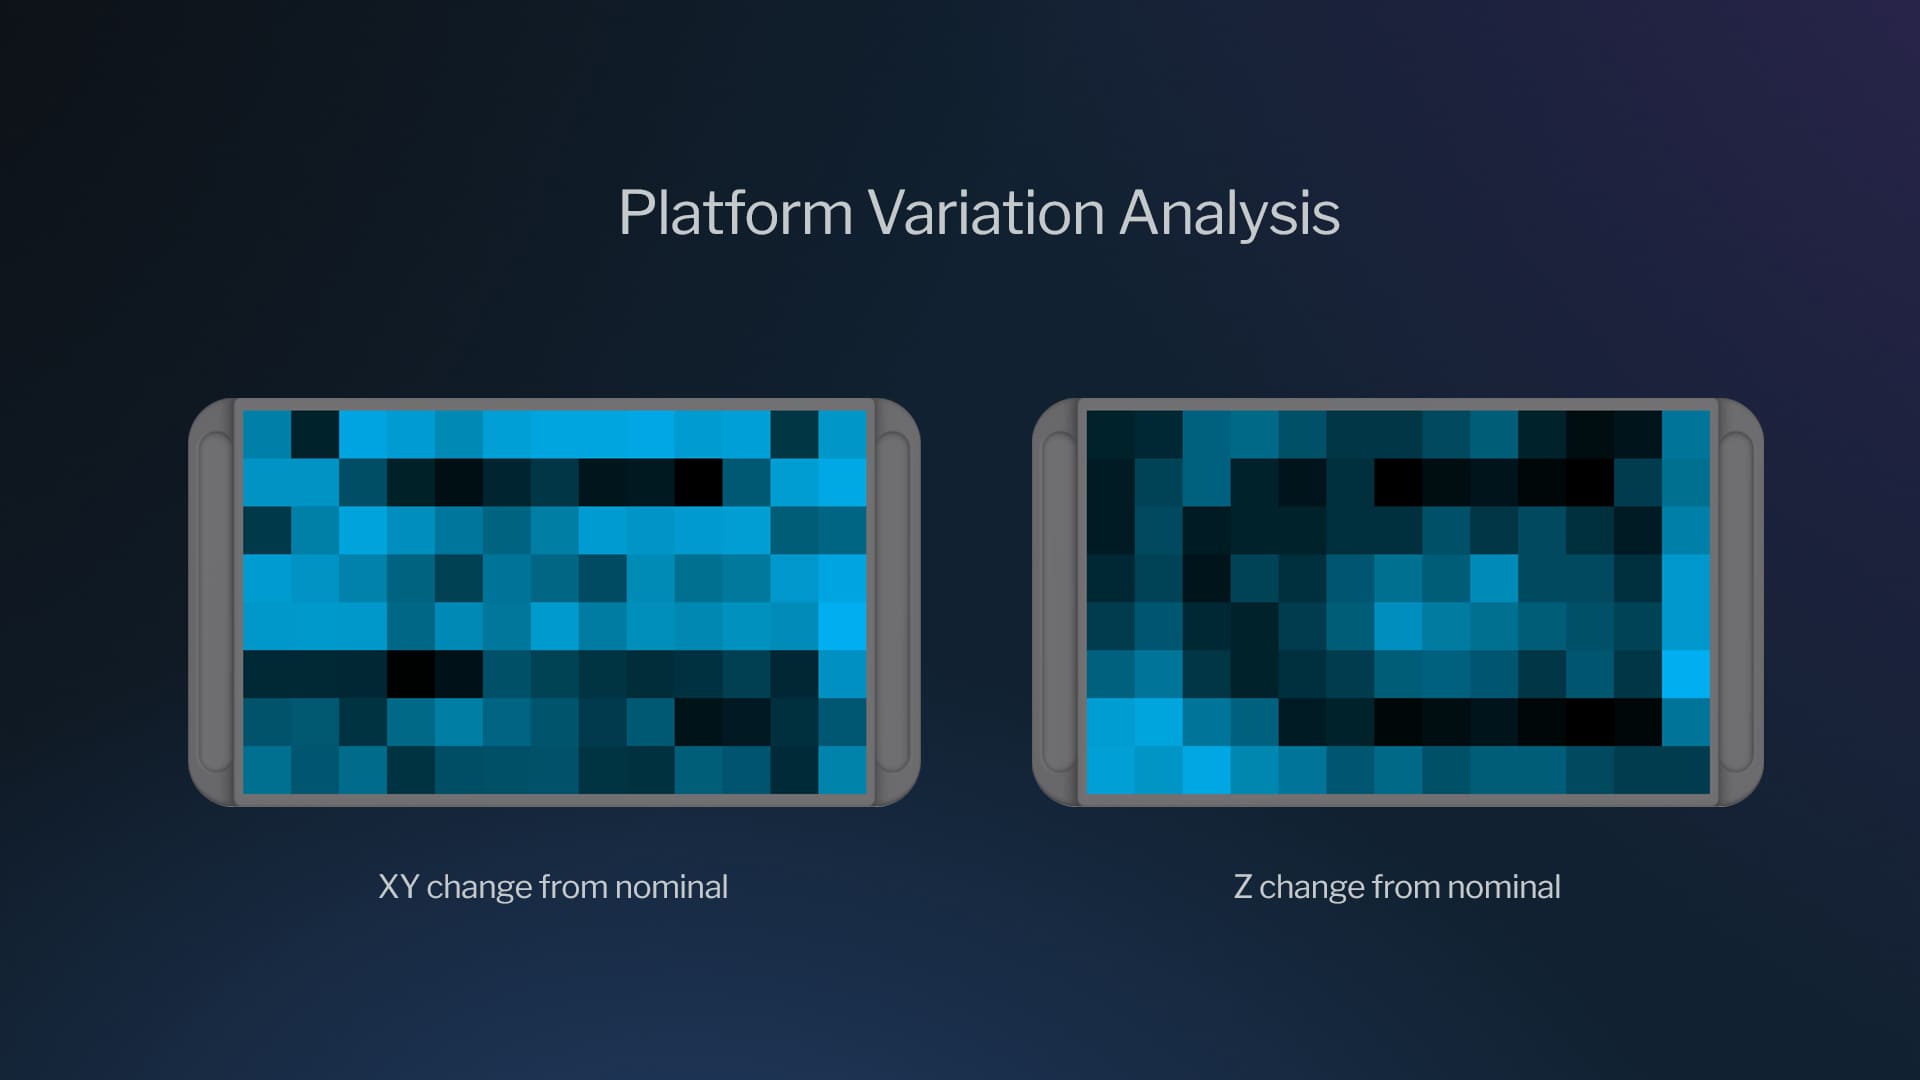 Platform variation analysis